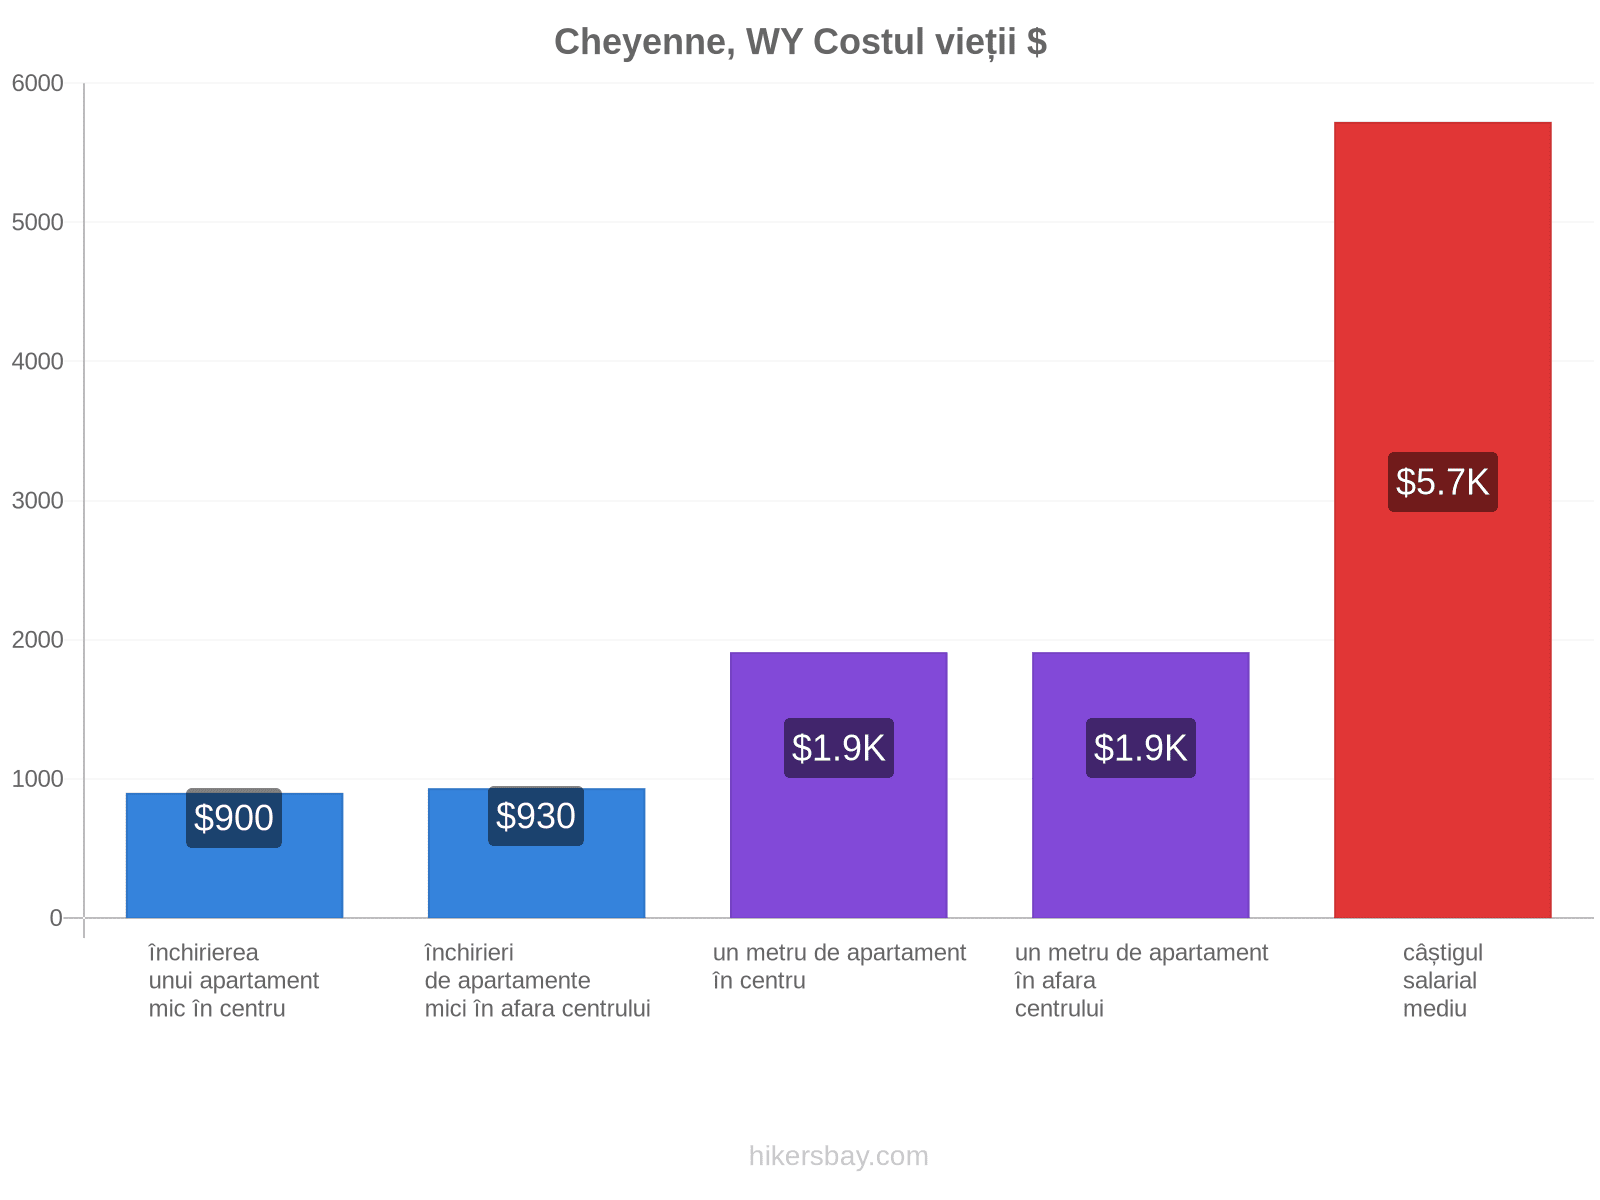 Cheyenne, WY costul vieții hikersbay.com